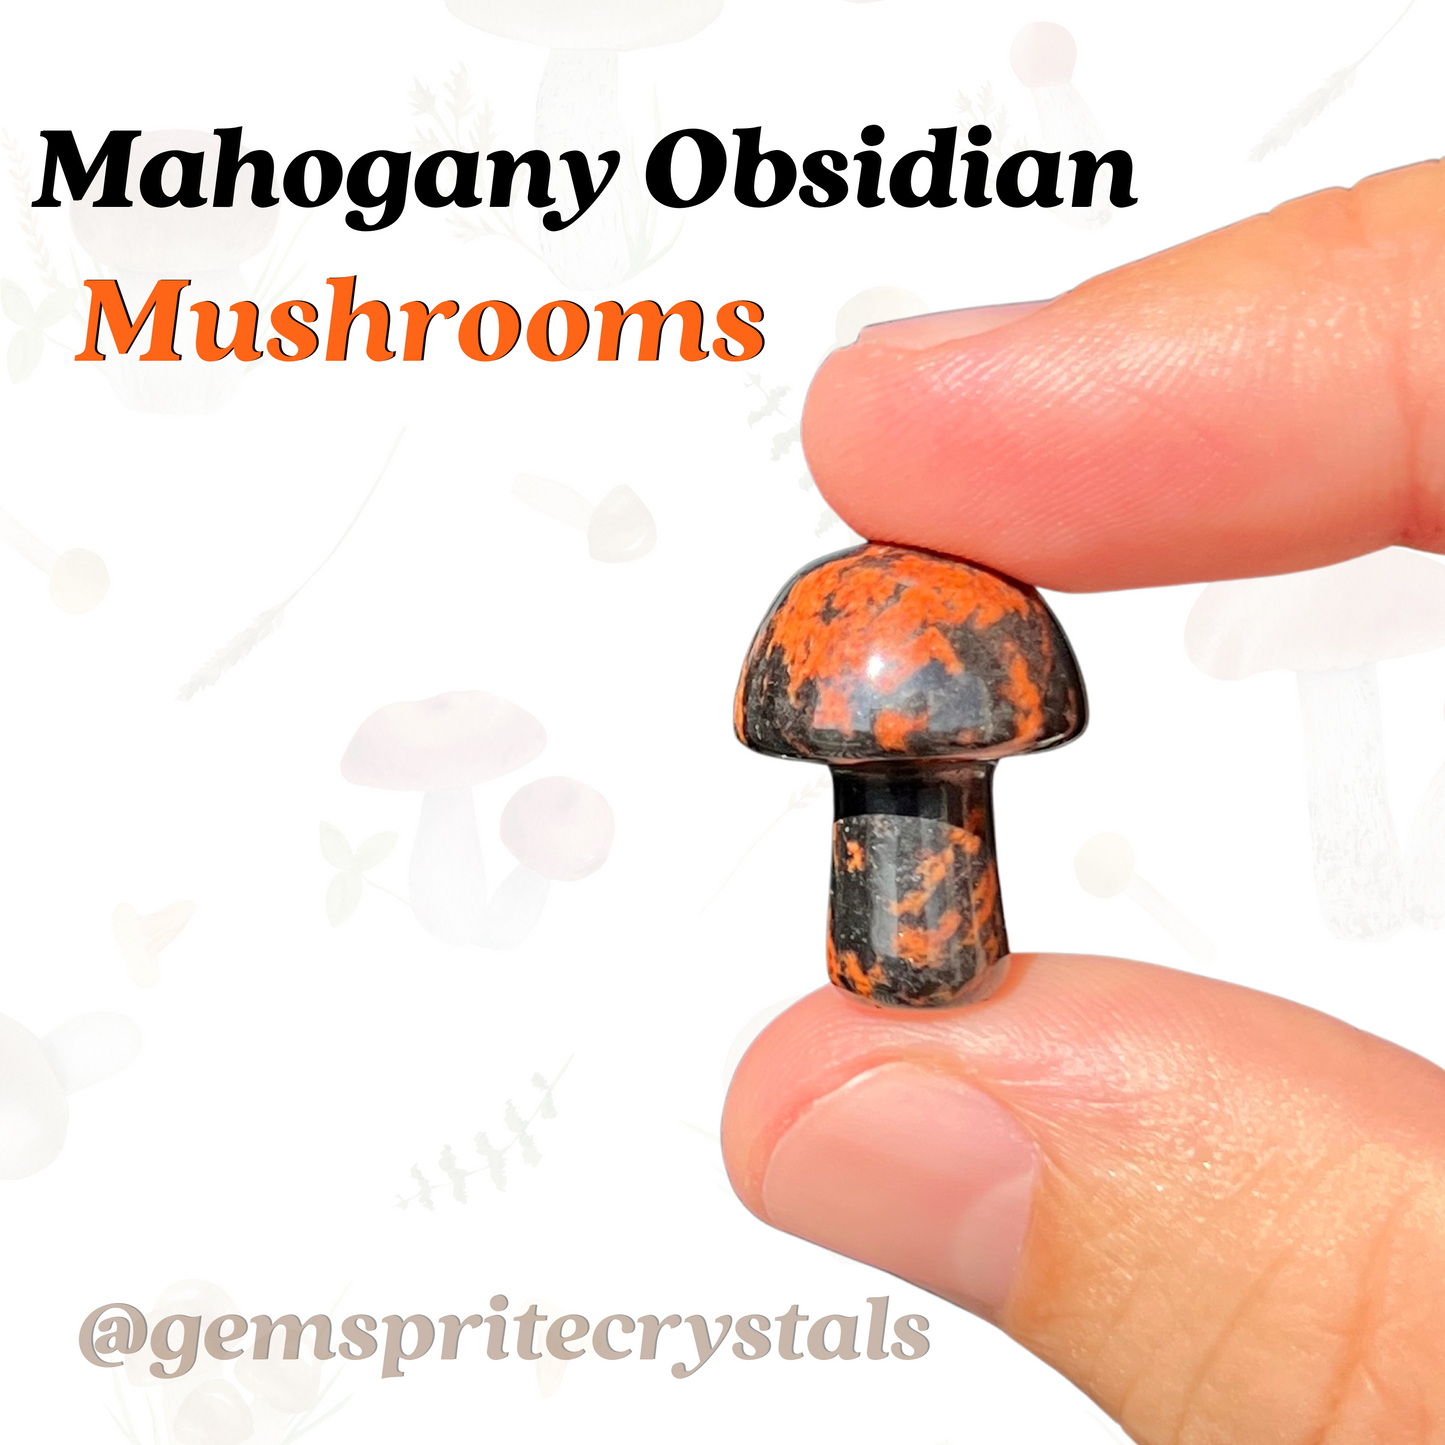 Mahogany Obsidian Mushrooms